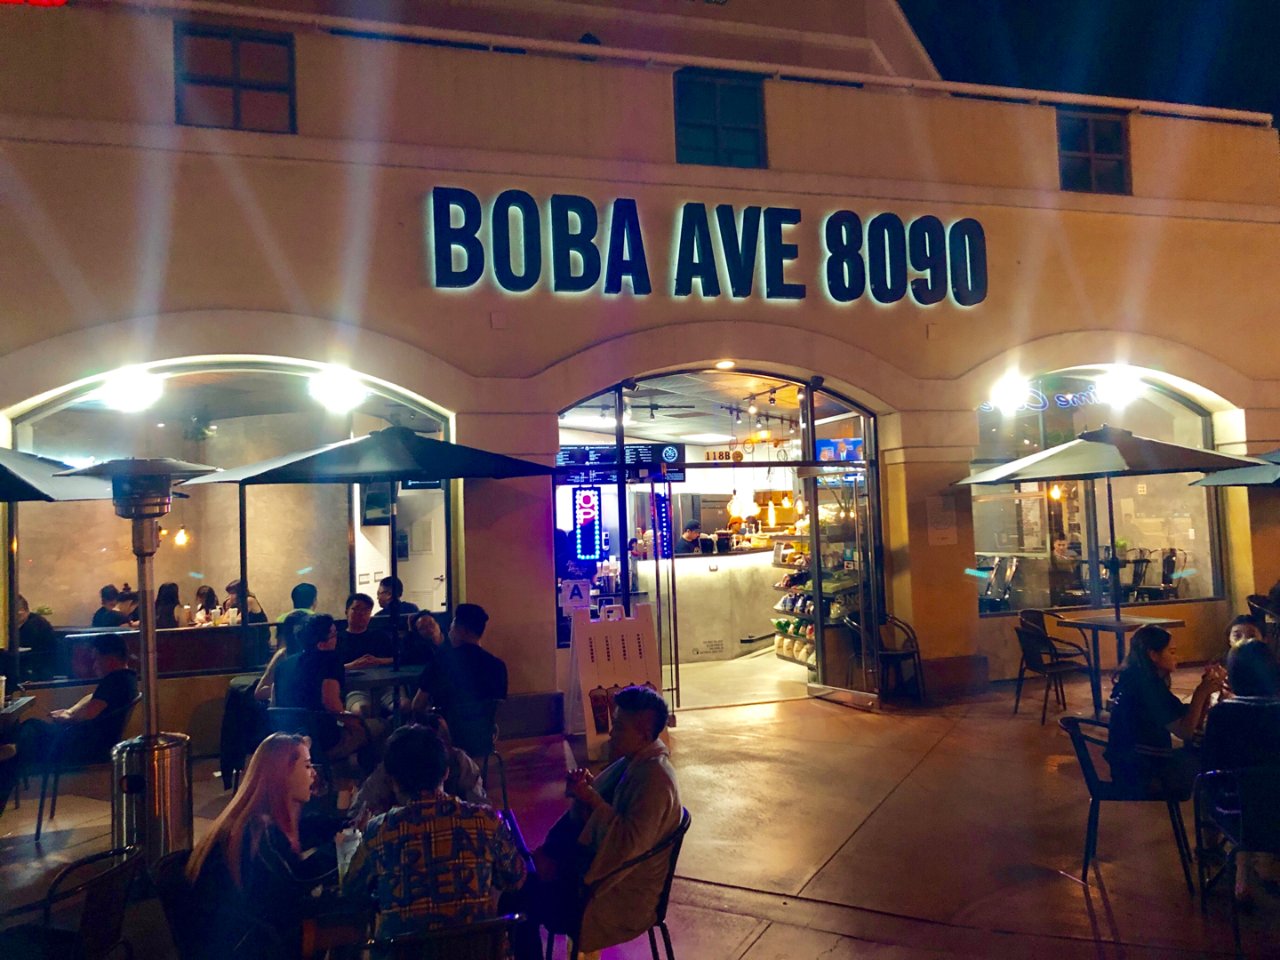 Boba Ave 8090,San Gabriel